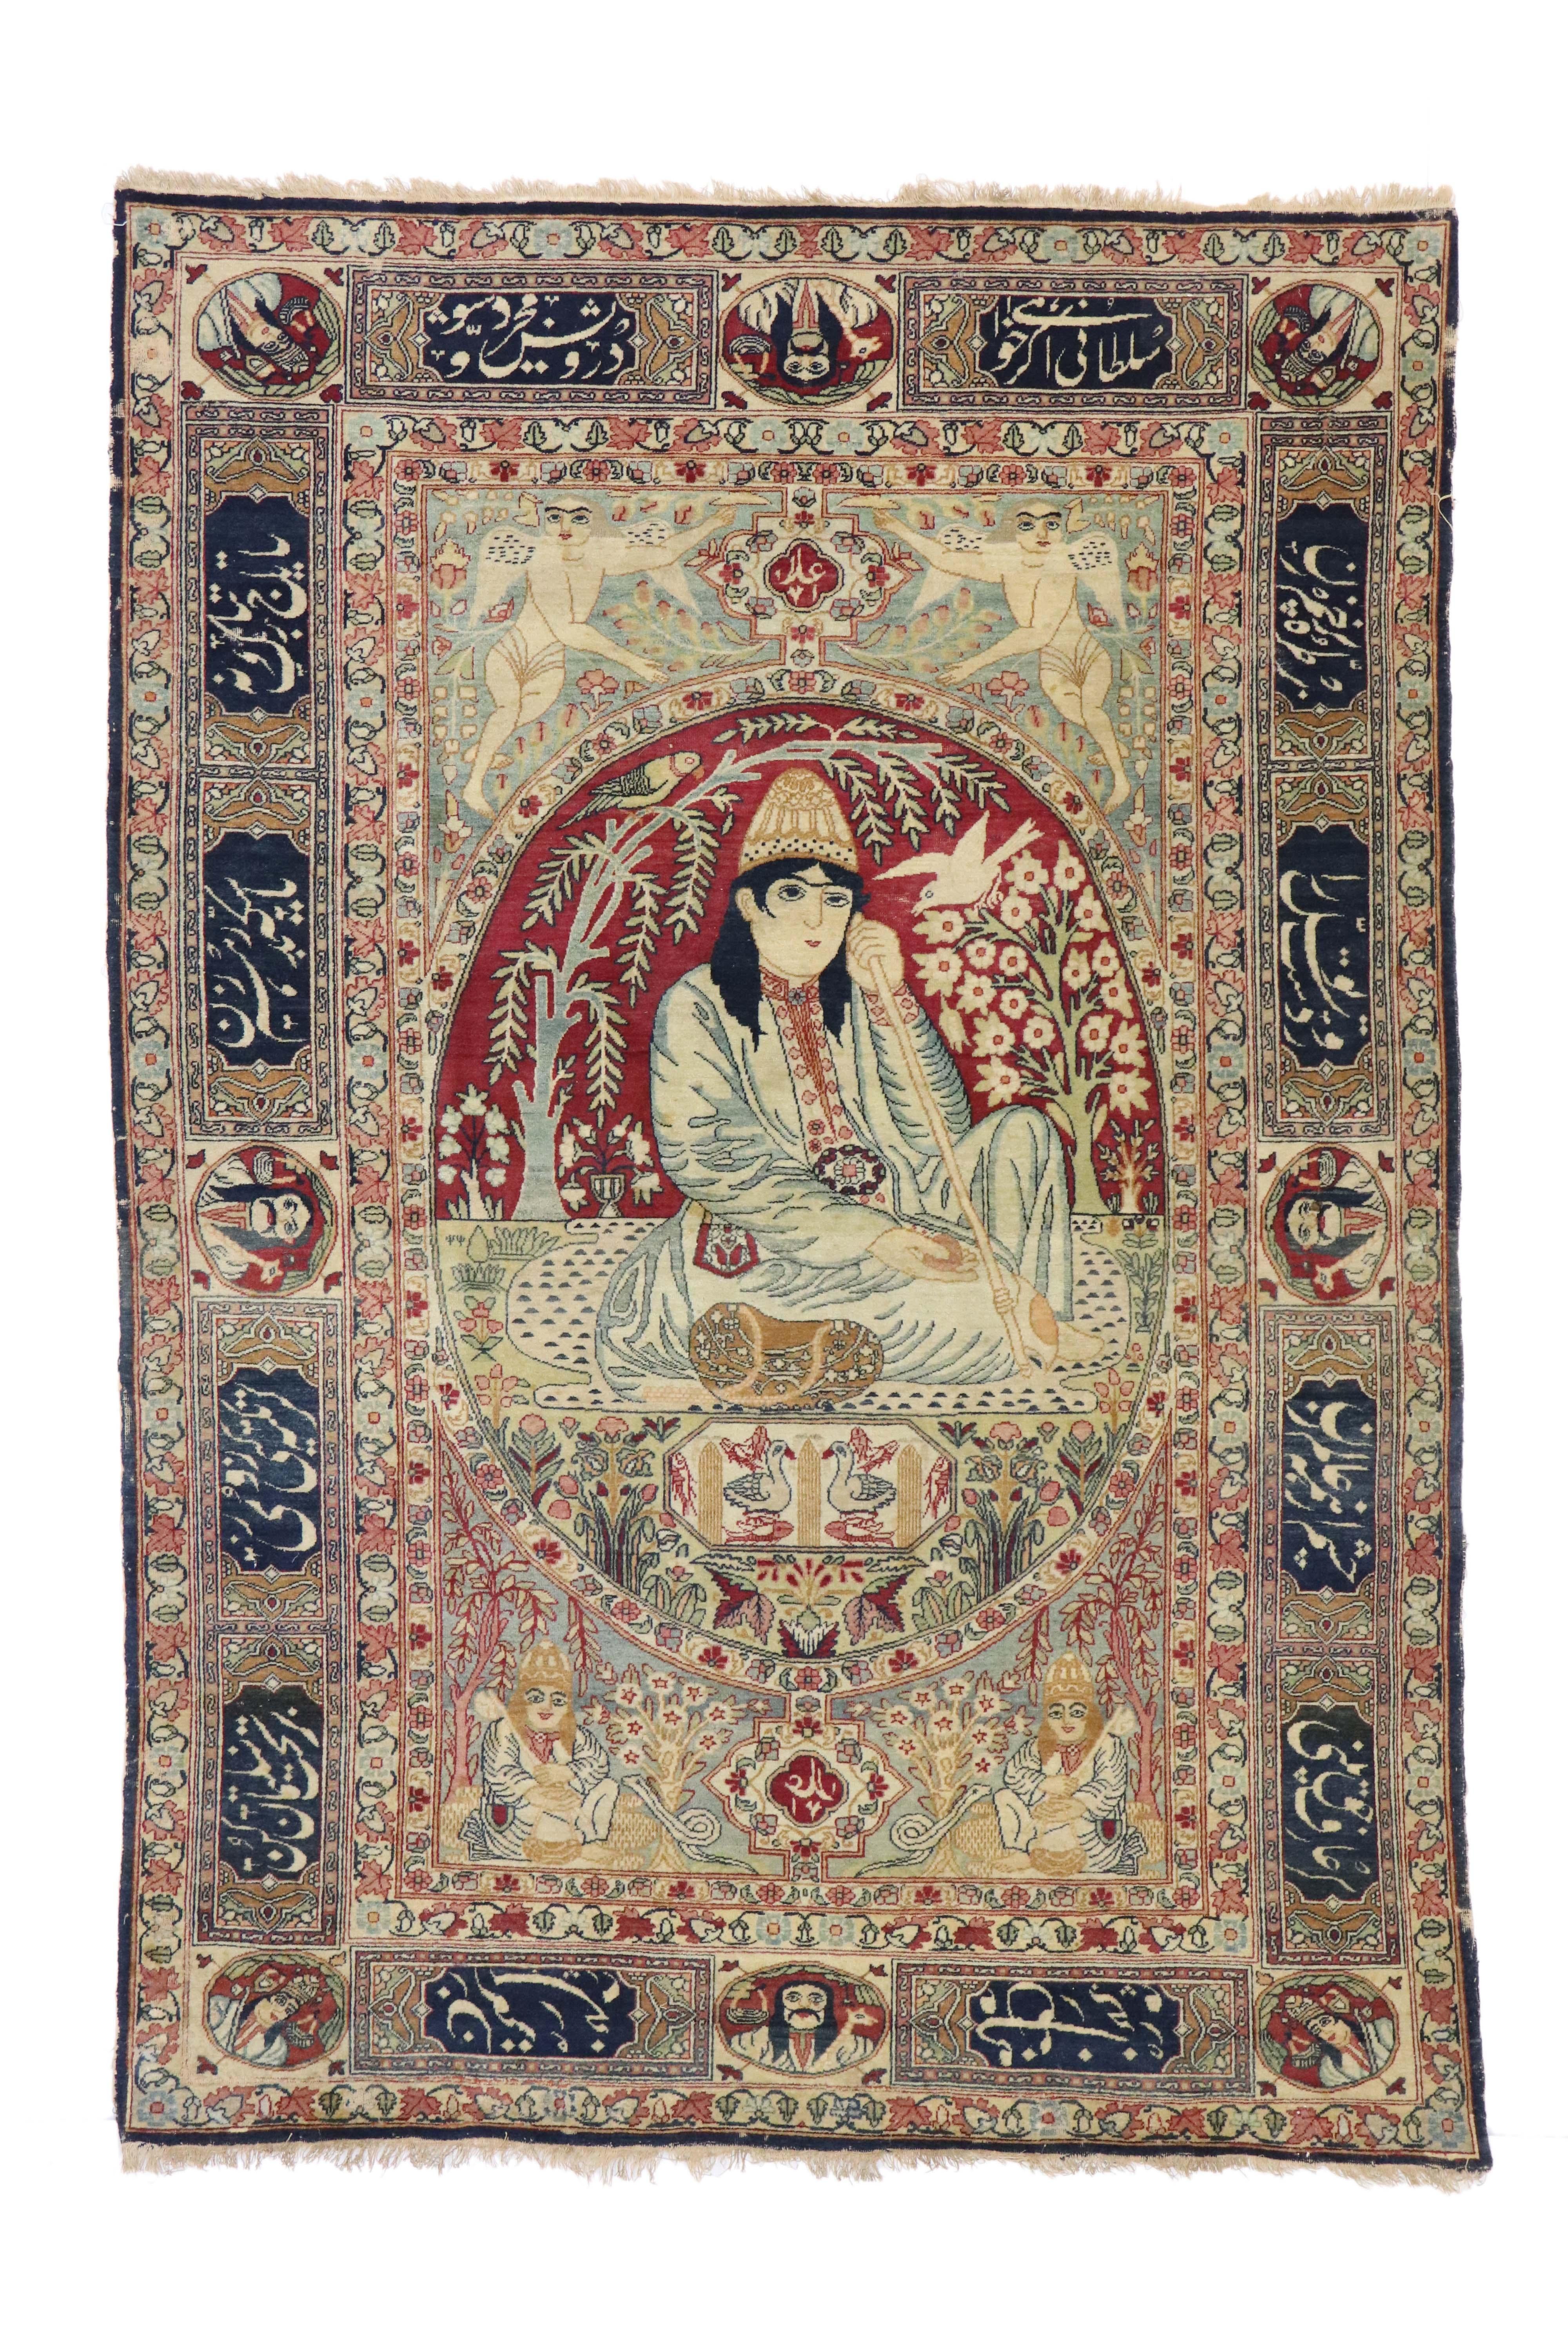 74336 Antiker persischer Kerman Bildteppich, Derwisch unter Weidenbaum Wandteppich. Dieser antike persische Kirman-Teppich wurde von Nur Ali Shah inspiriert und zeigt ein ausdrucksstarkes Bild eines Derwischs unter einem Weidenbaum. In der Mitte,